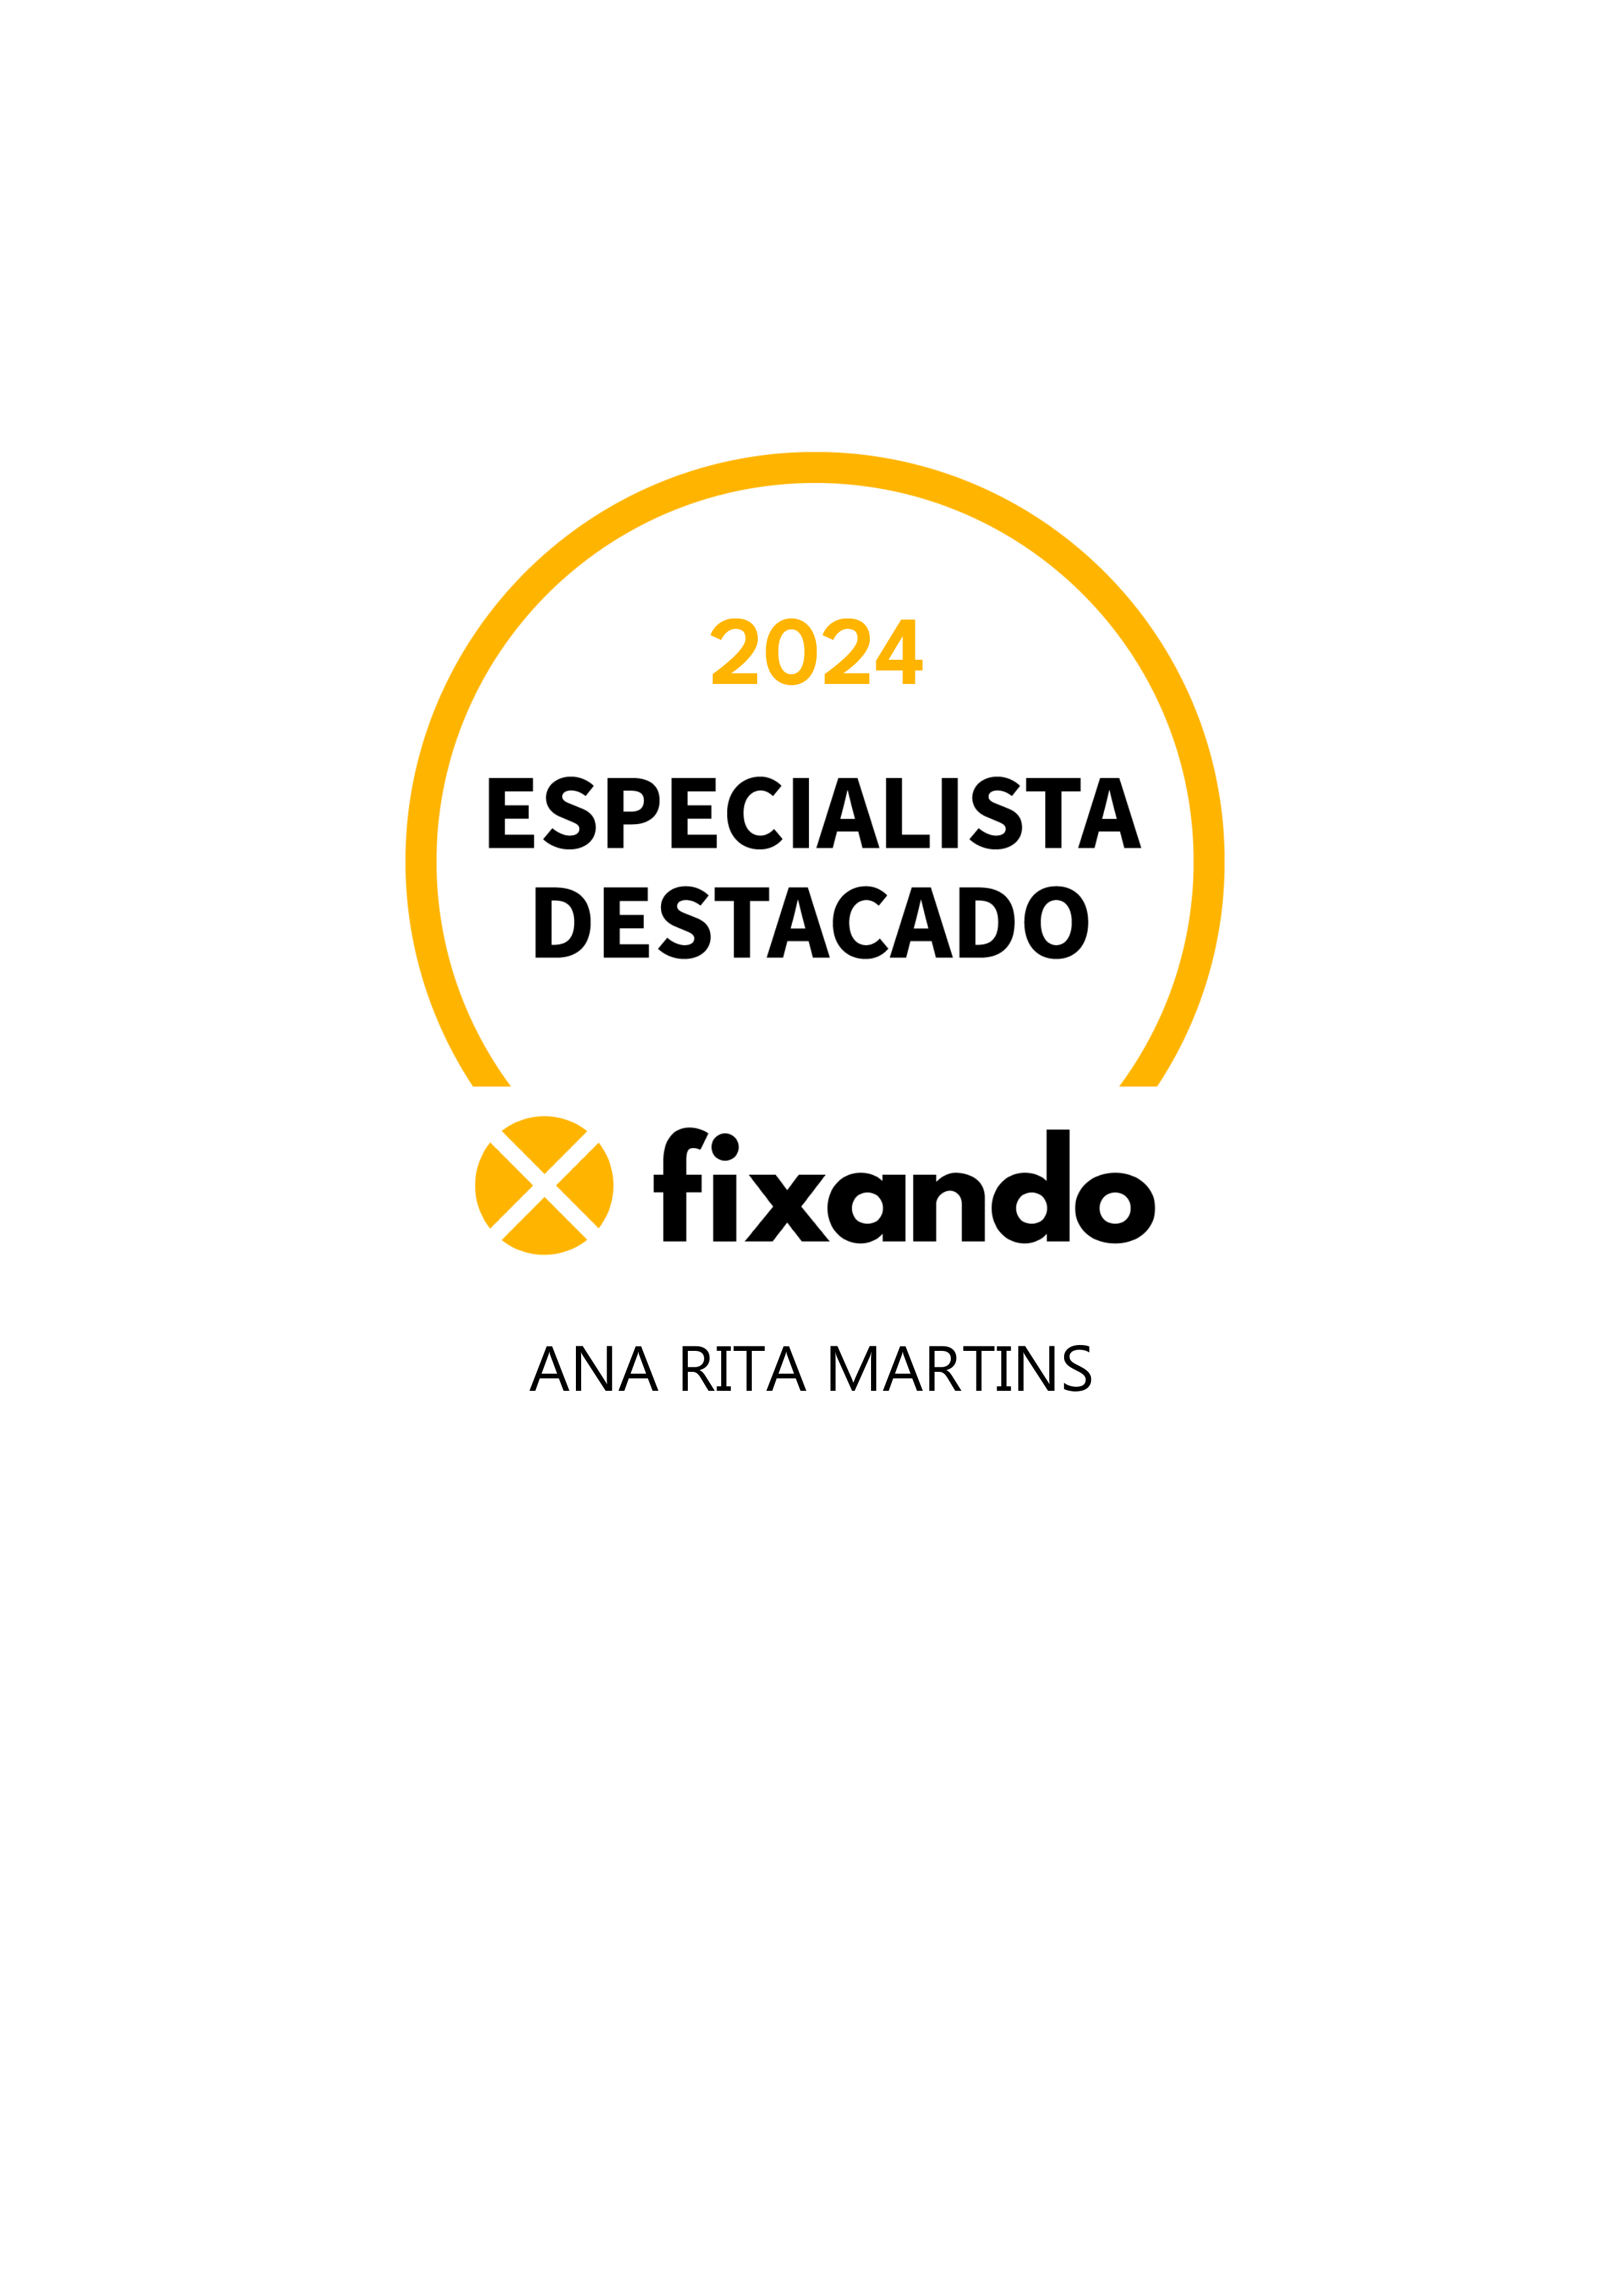 Ana Rita Martins - Almada - Advogado de Direito Civil